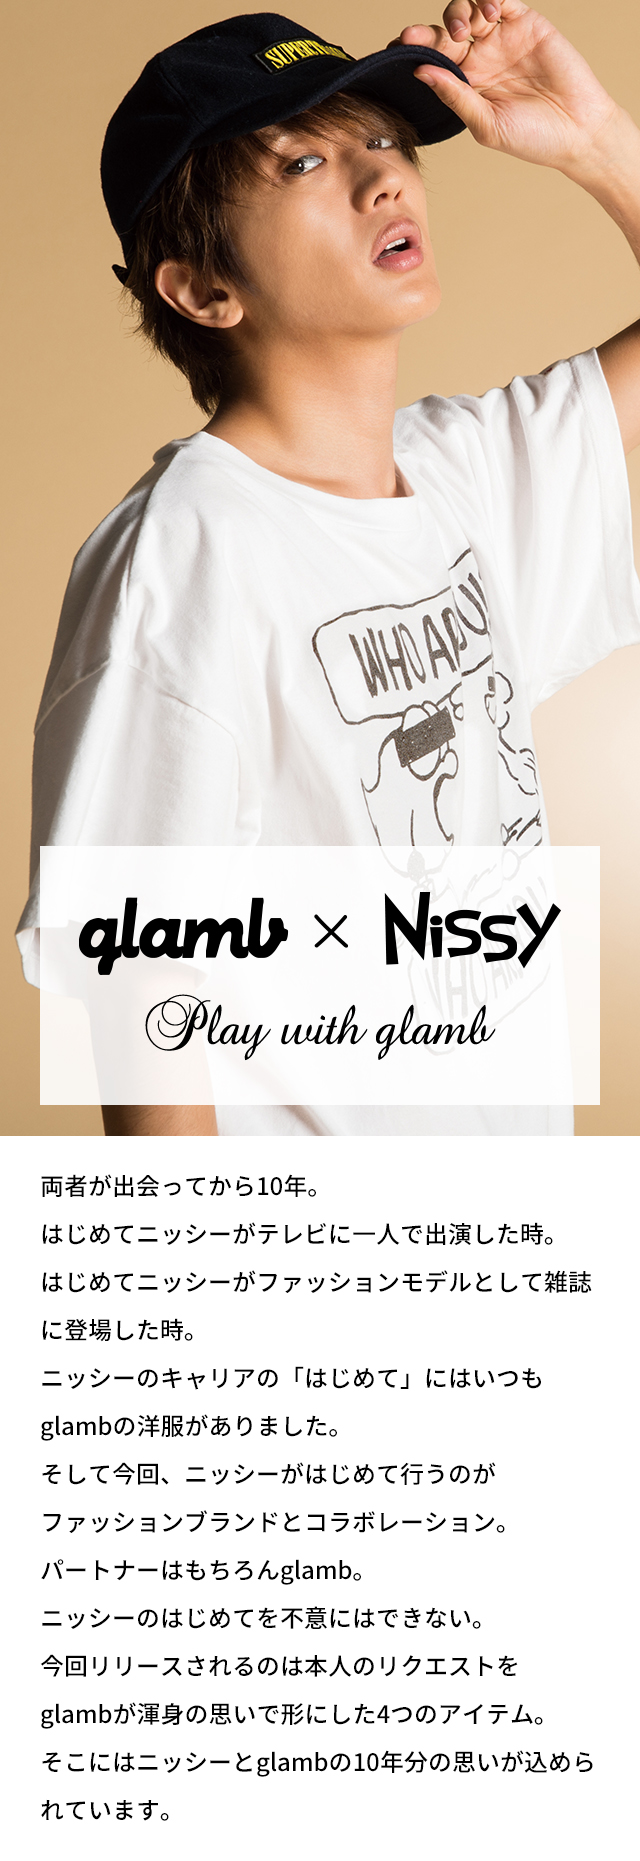 くつろぎカフェタイム Nissy glamb コラボ Tシャツ - 通販 - www ...